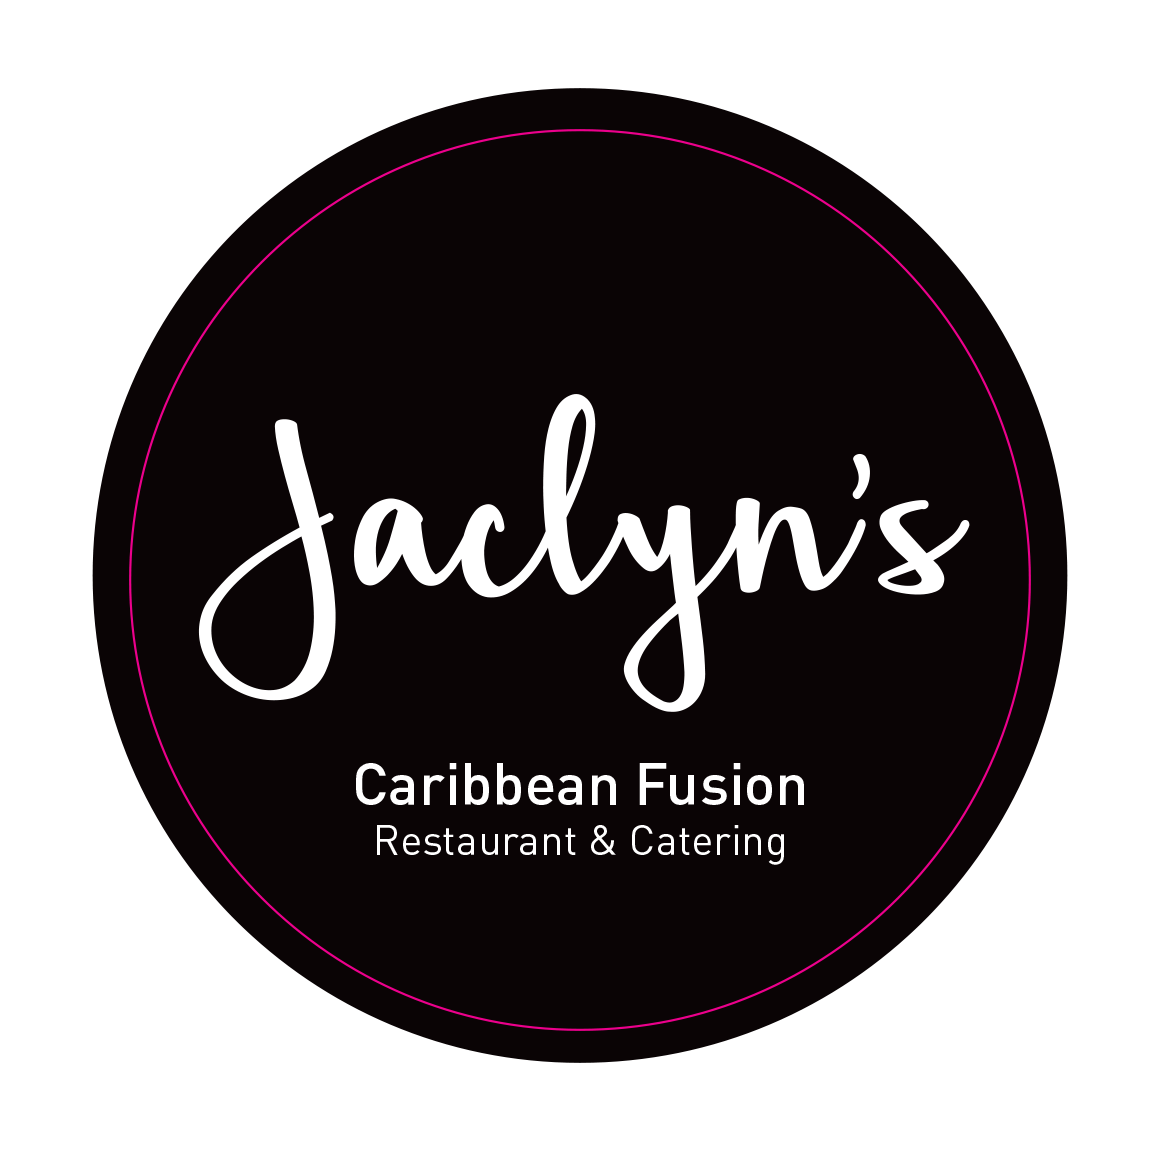 Jaclyns Caribbean Fusion Restaurant